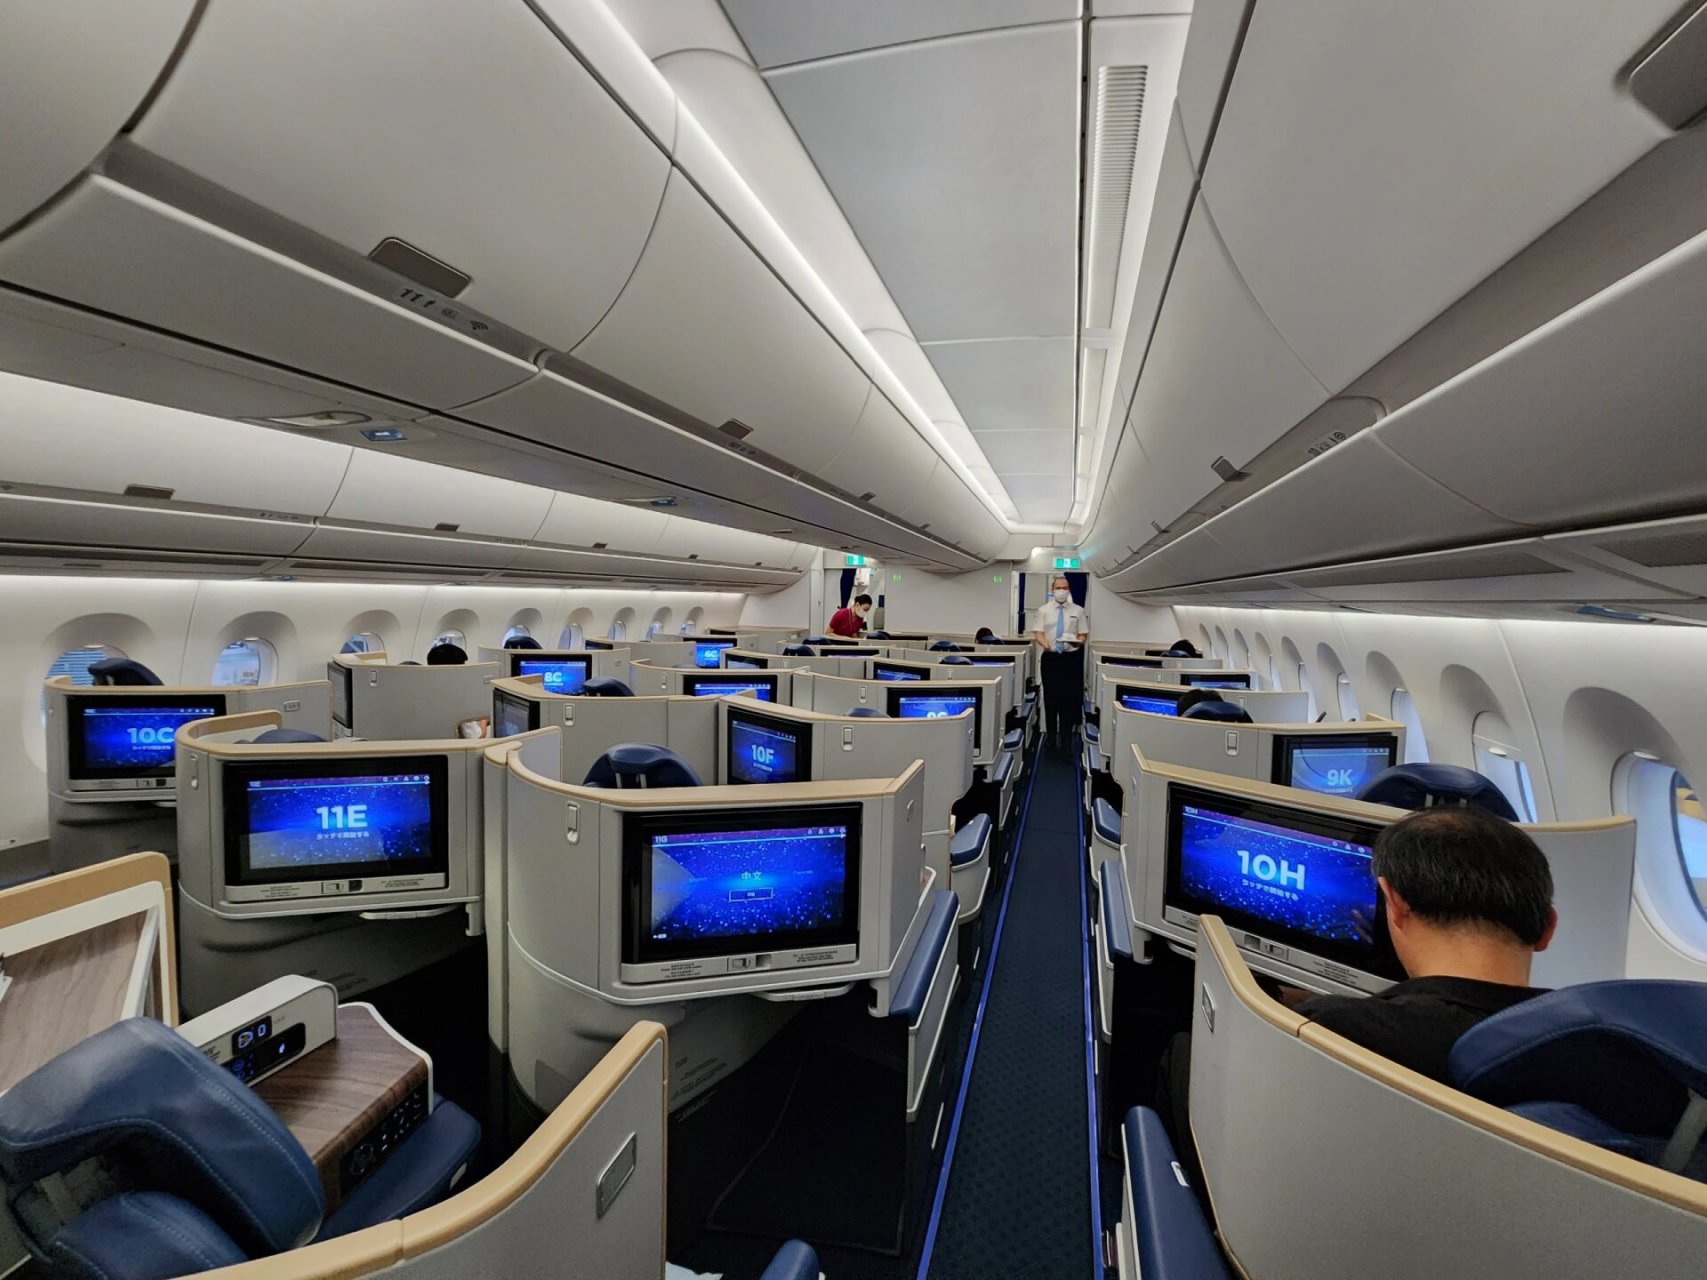 南航空客350公务舱 can→pkx躺着飞南航公务舱休息室餐食还可以